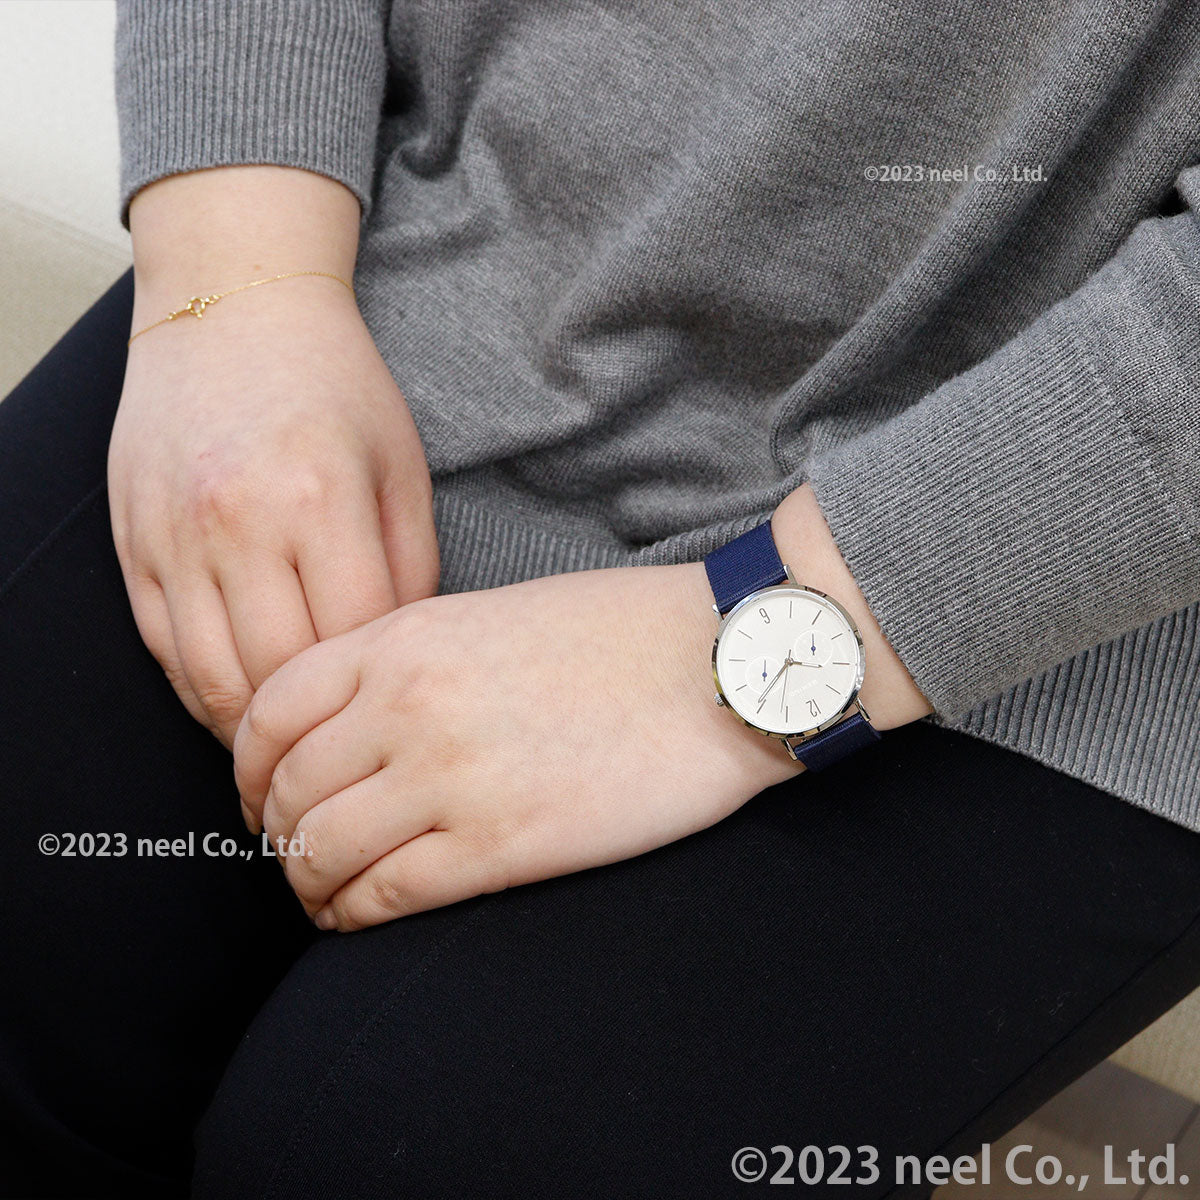 ベーリング BERING 日本限定モデル OCEAN 腕時計 メンズ レディース OCEAN ＆ FOREST 14236-500-J